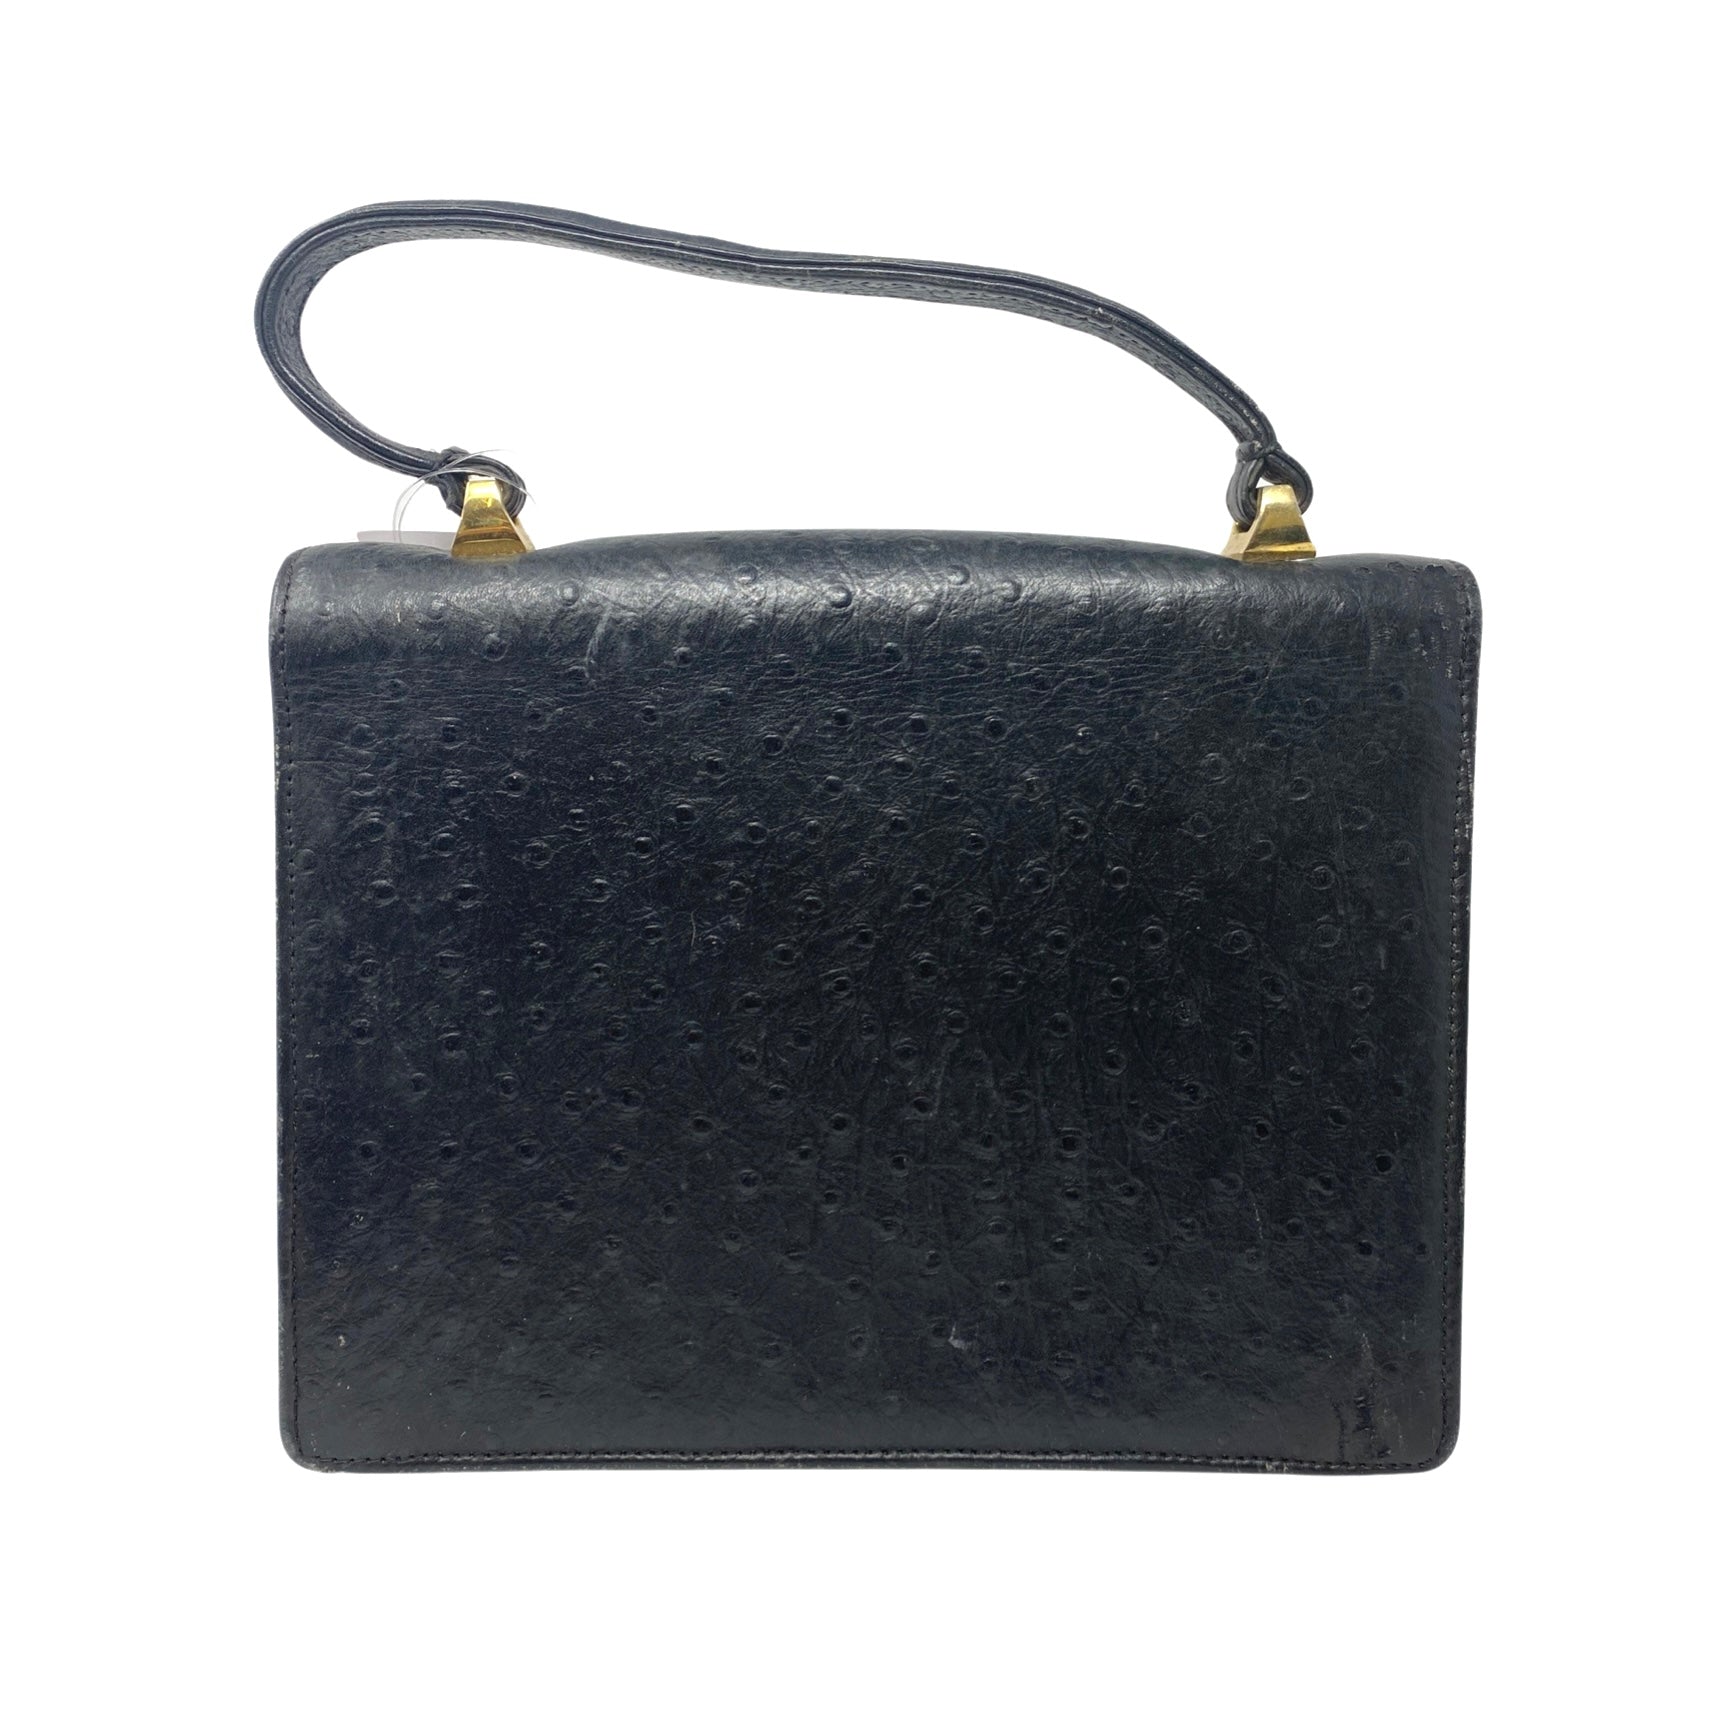 Vintage Ostrich Embossed Leather Rectangular Handbag